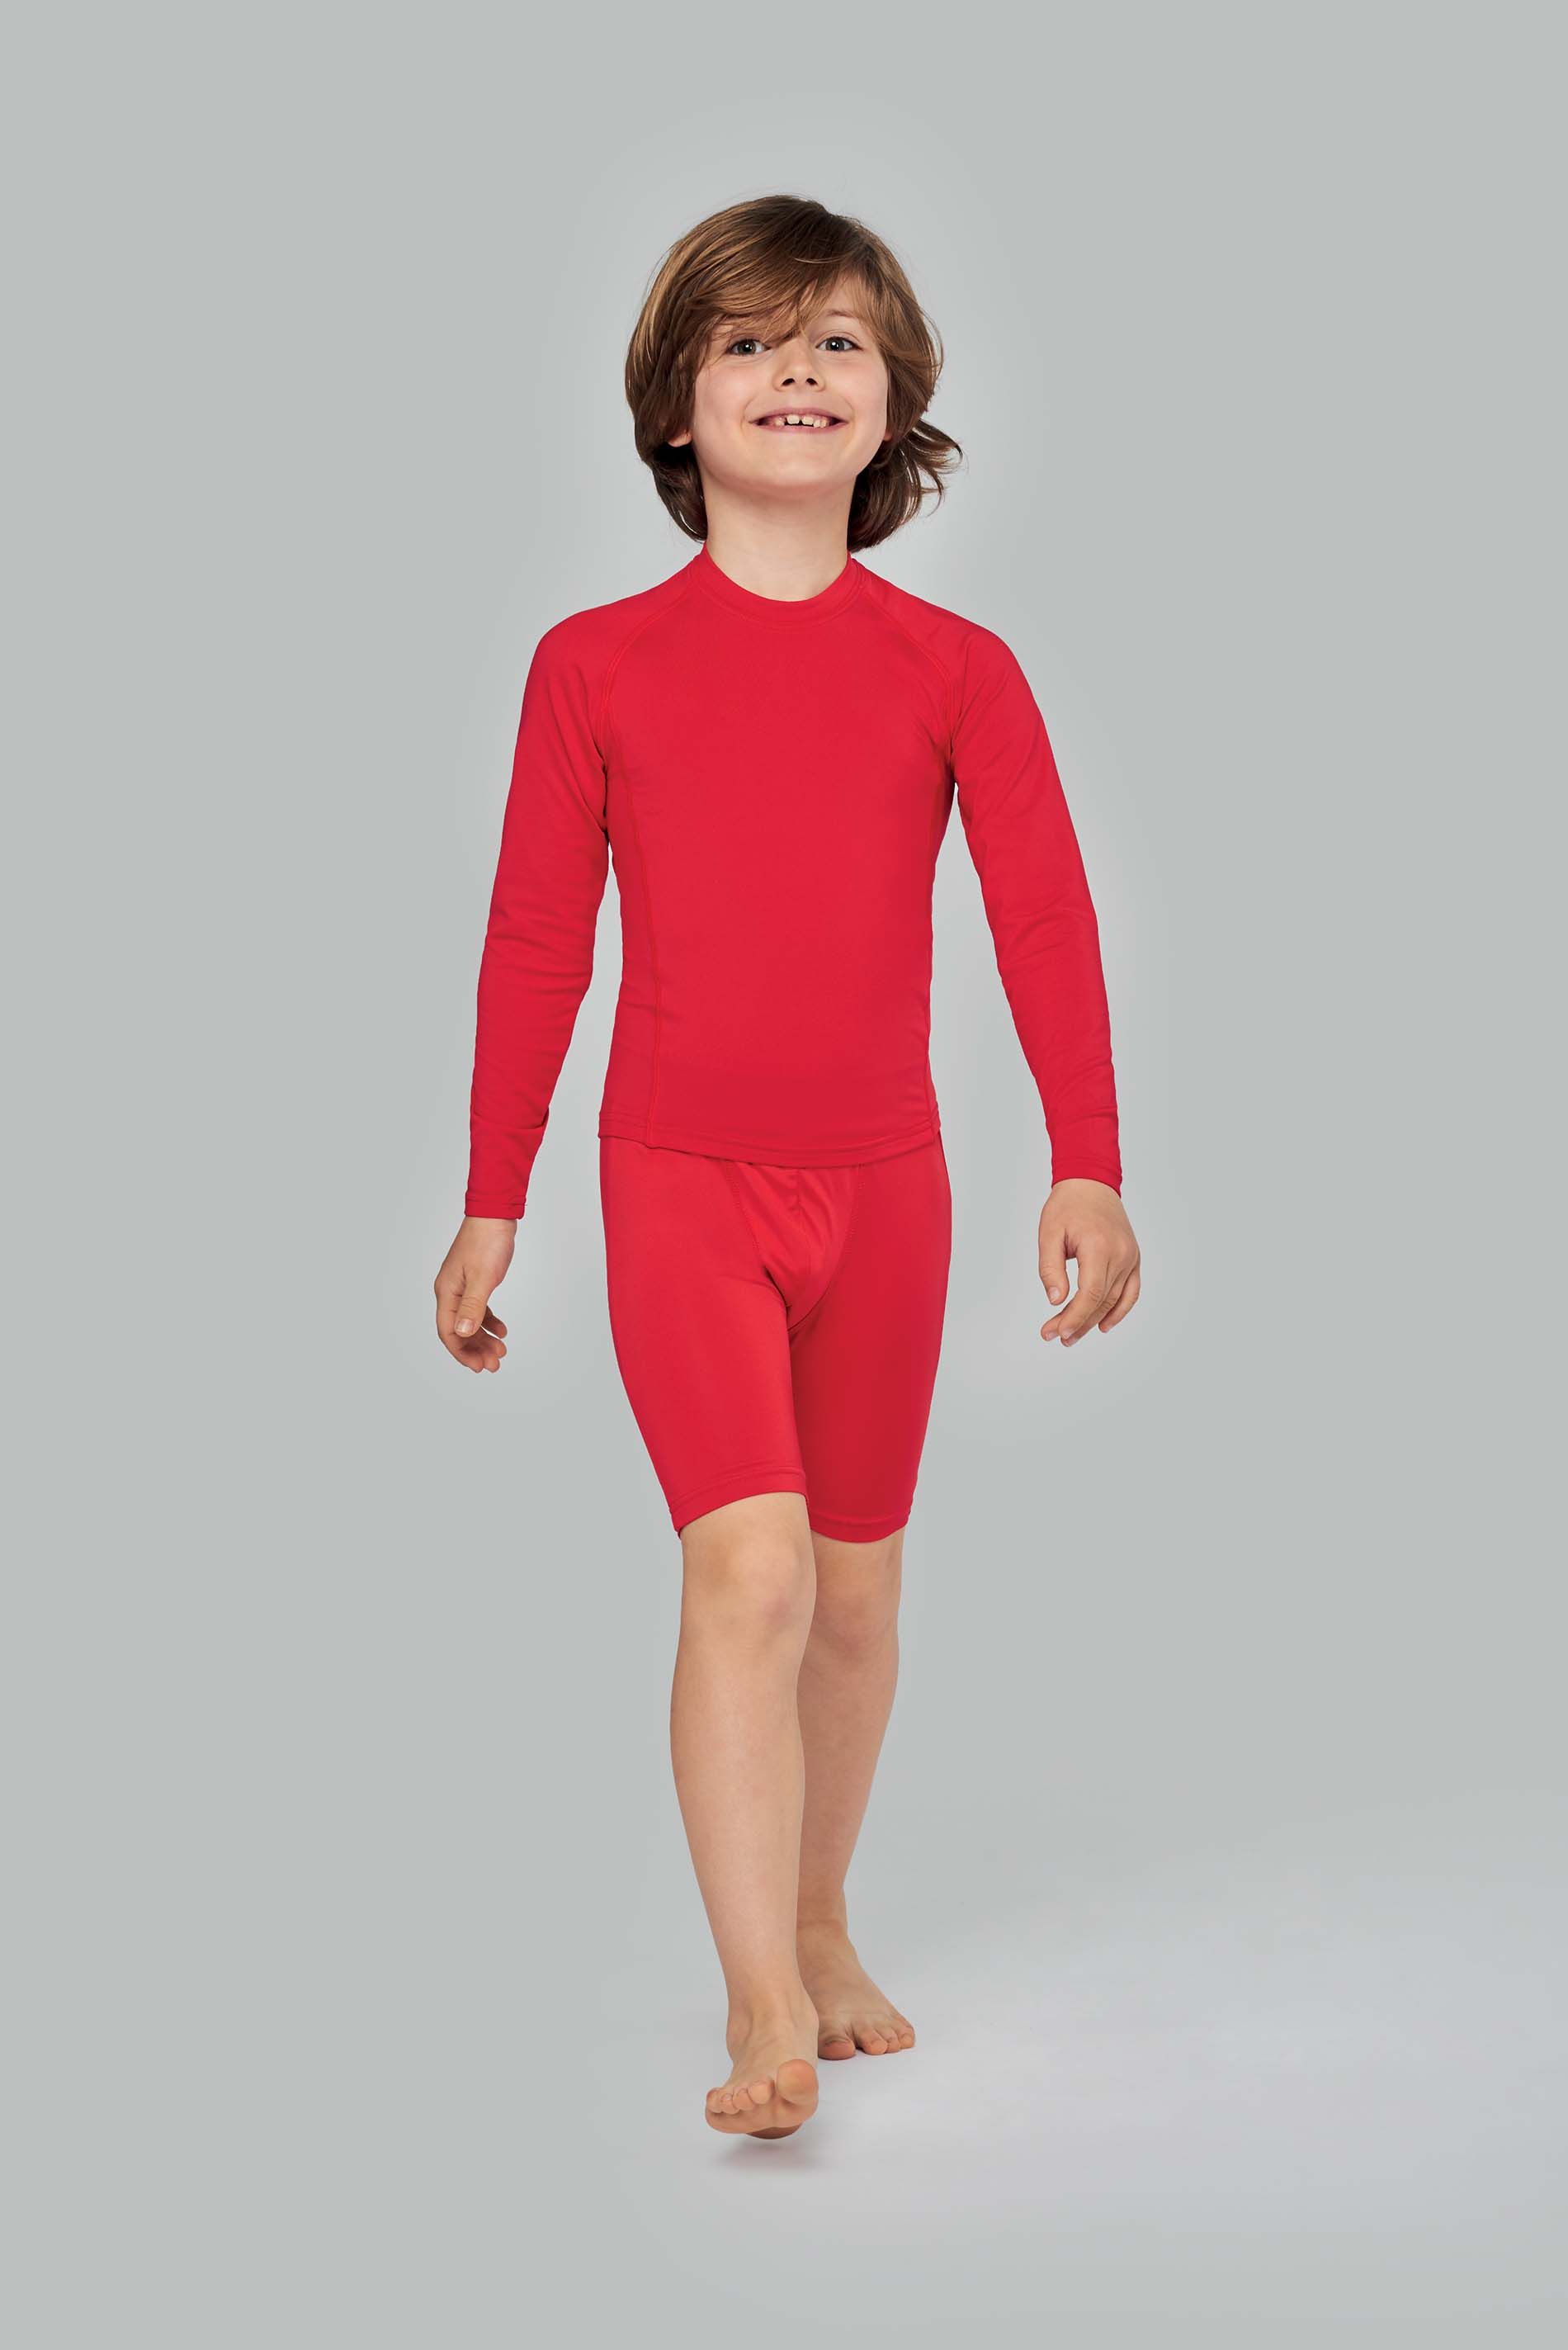 T-shirt manches longues enfants personnalisable en ligne chez Textile Direct